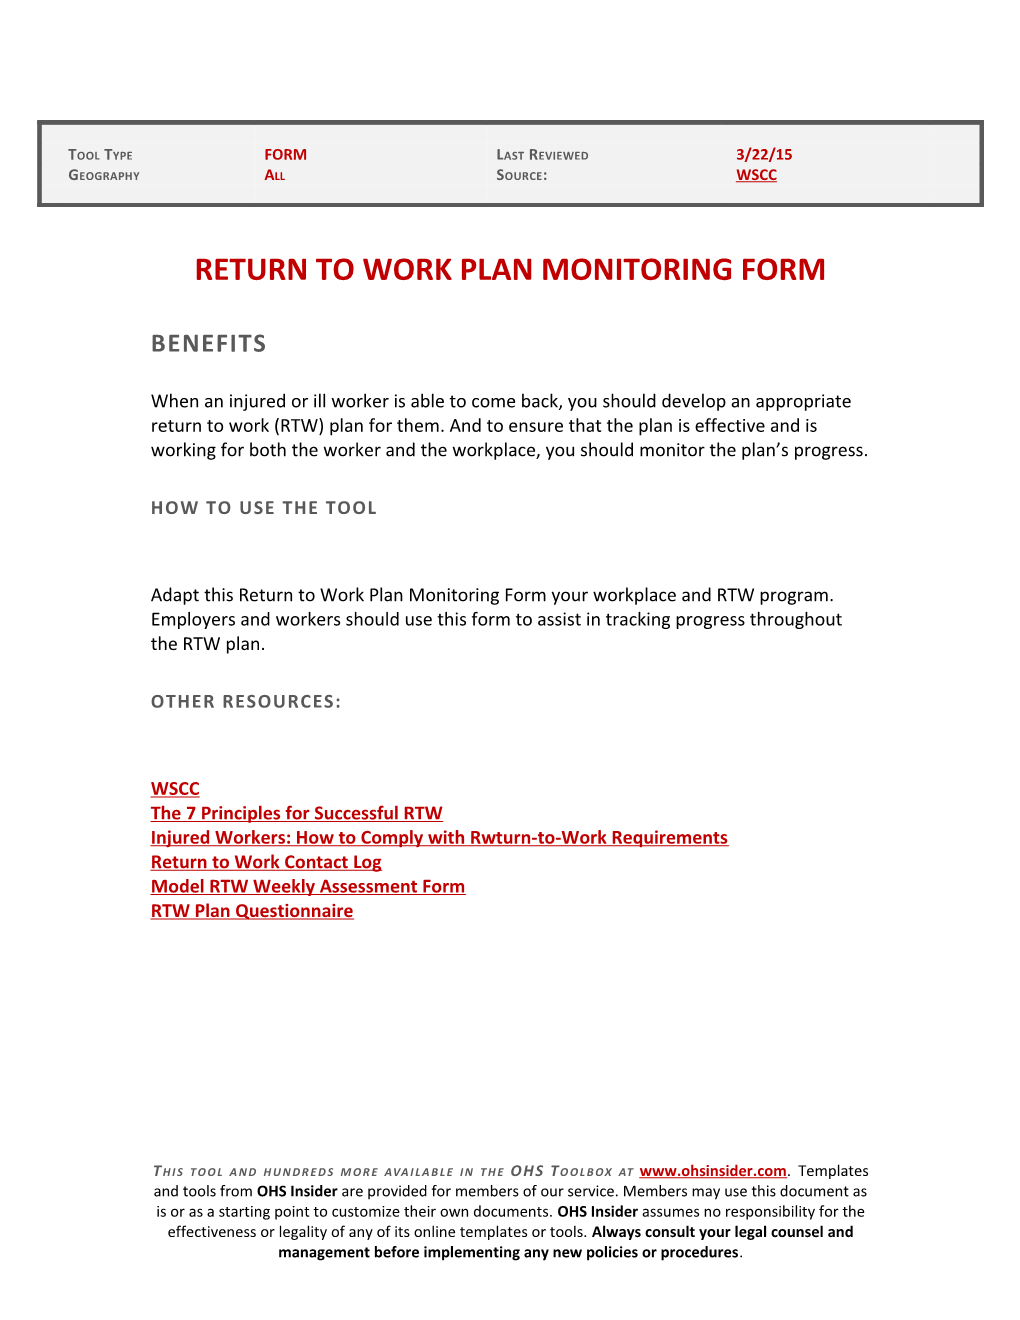 Return to Work Plan Monitoring Form